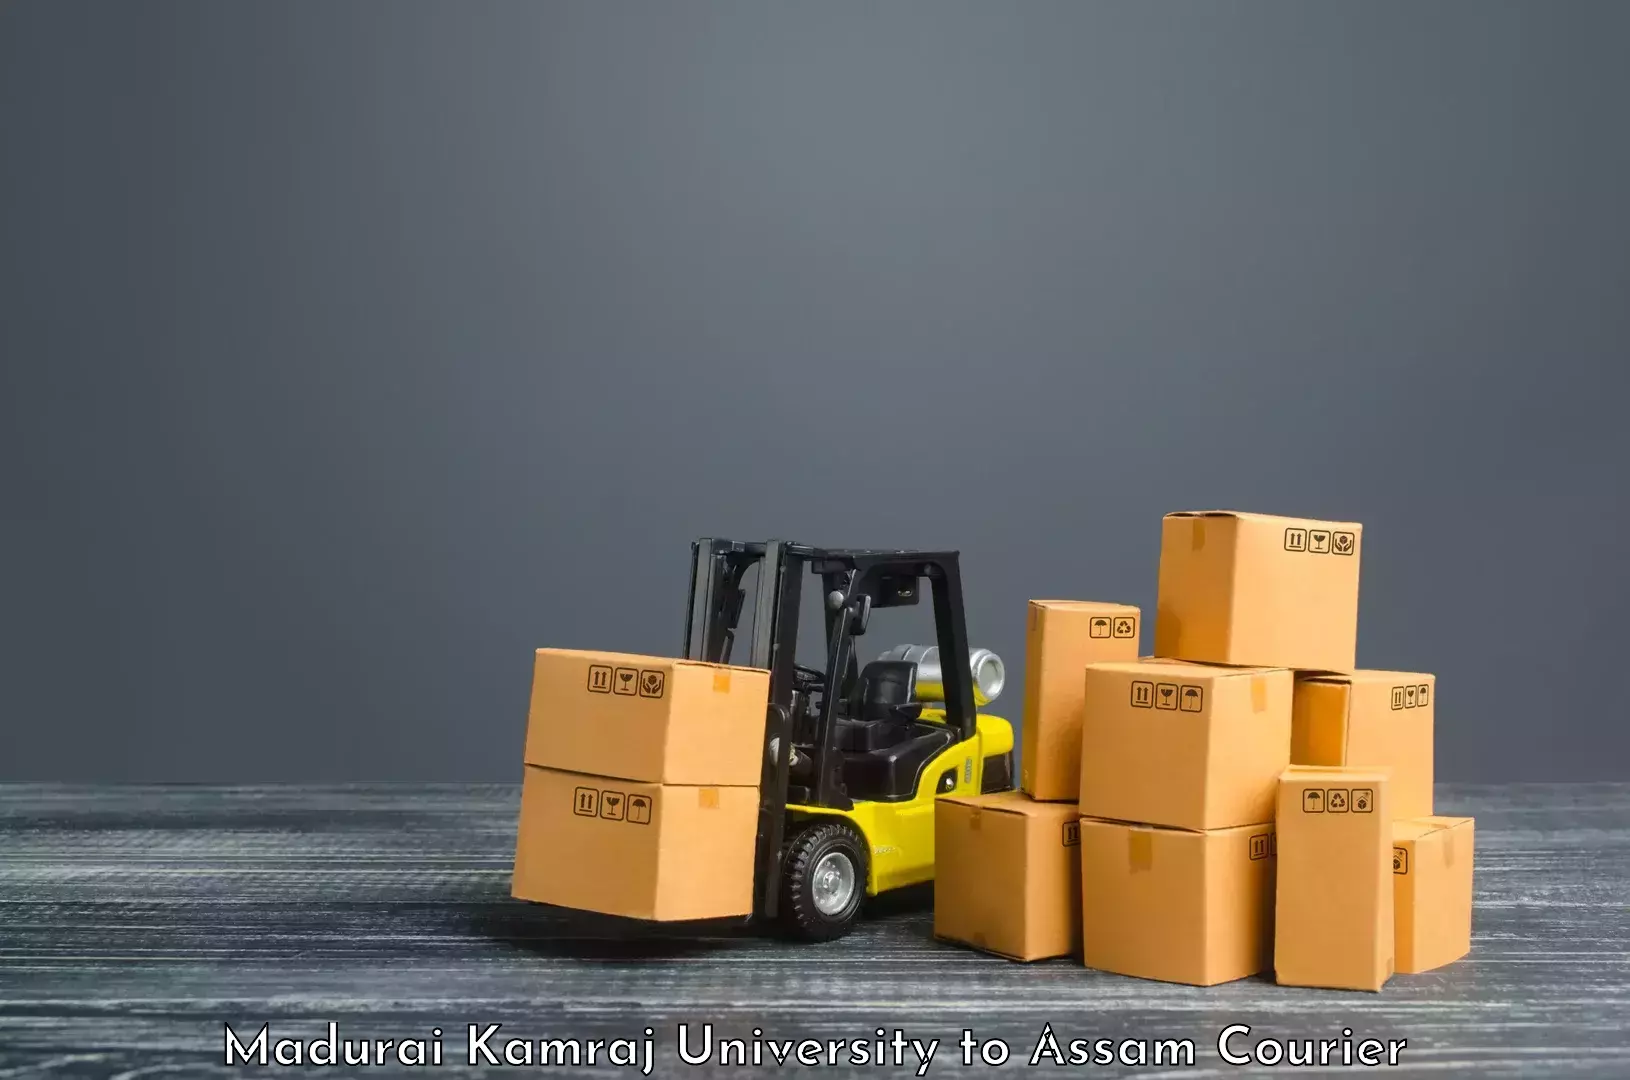 Efficient parcel delivery Madurai Kamraj University to Assam